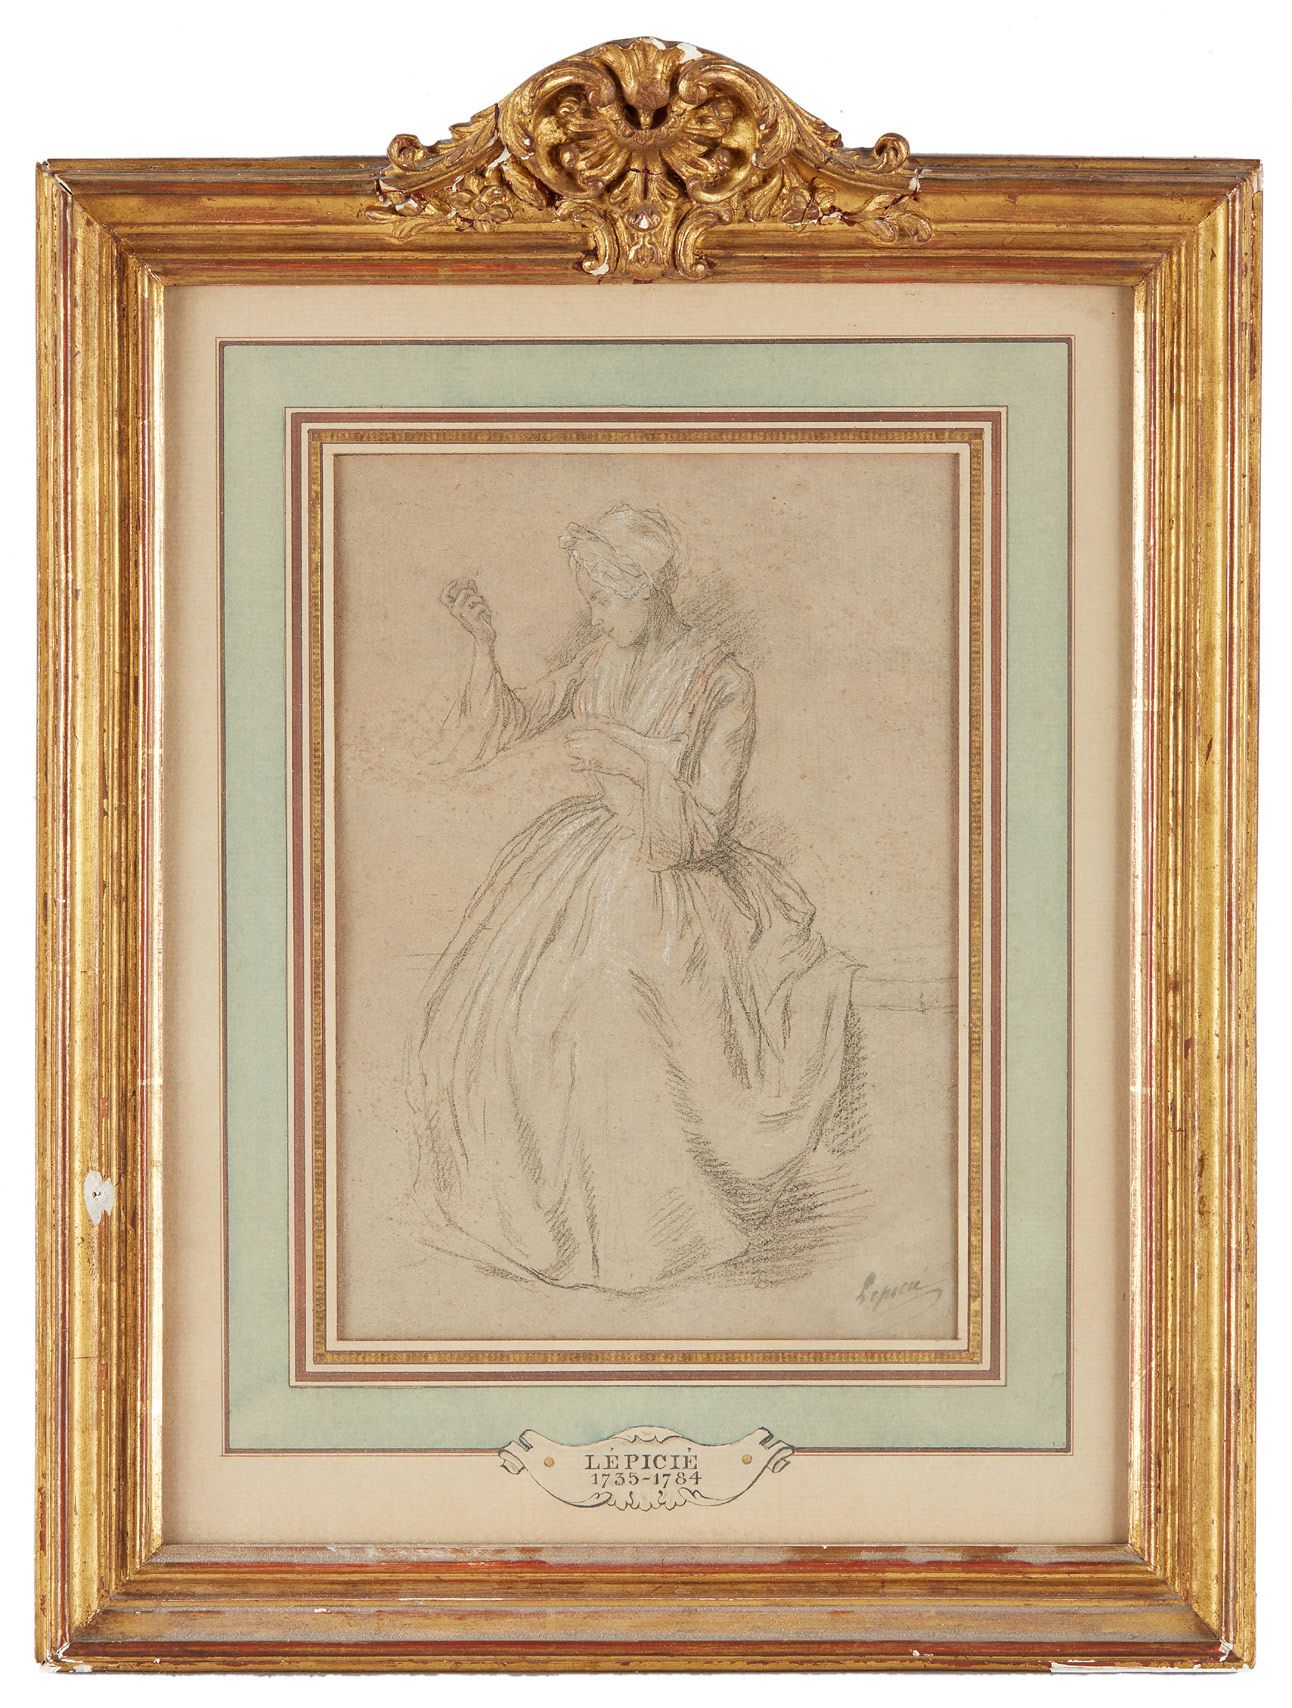 Nicolas Bernard LEPICIE (Paris 1735 - 1784) Etude de femme assise
Pierre noire, &hellip;